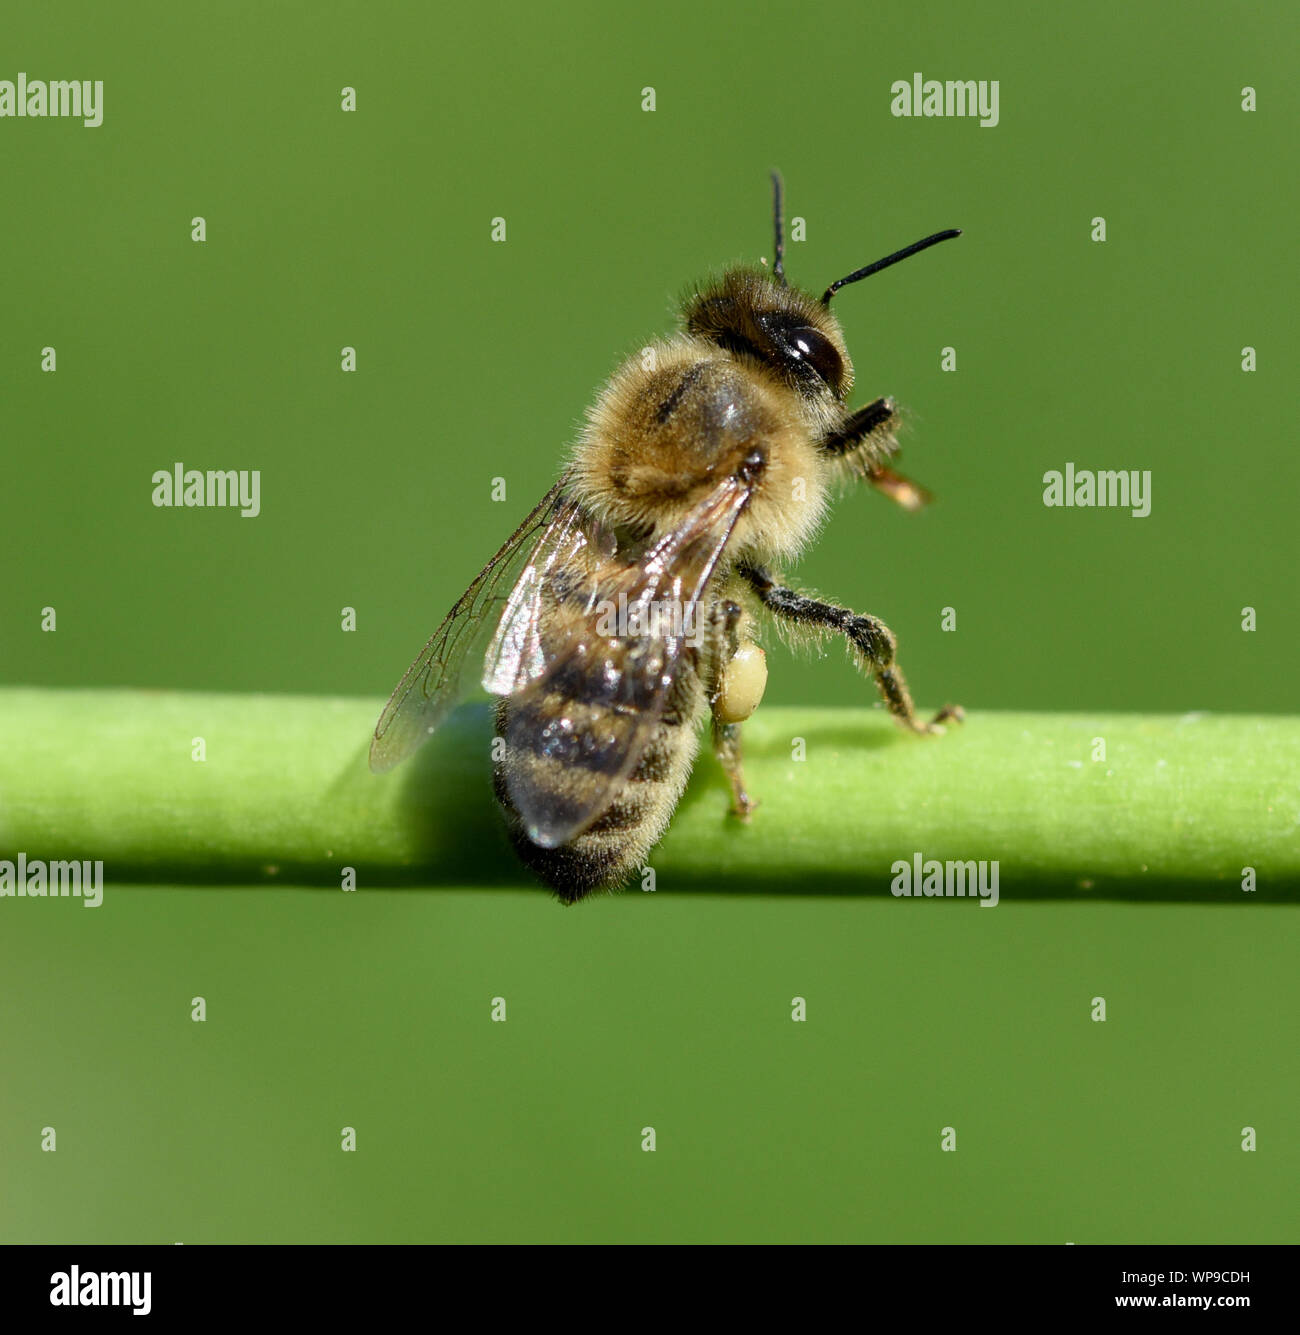 Honigbiene, Apis mellifera, ist ein wichtiges Insekt zur Bestaeubung von Pflanzen und zum Illustr. von Honig. Honigbiene, Apis mellifera, ist ein Importan Stockfoto